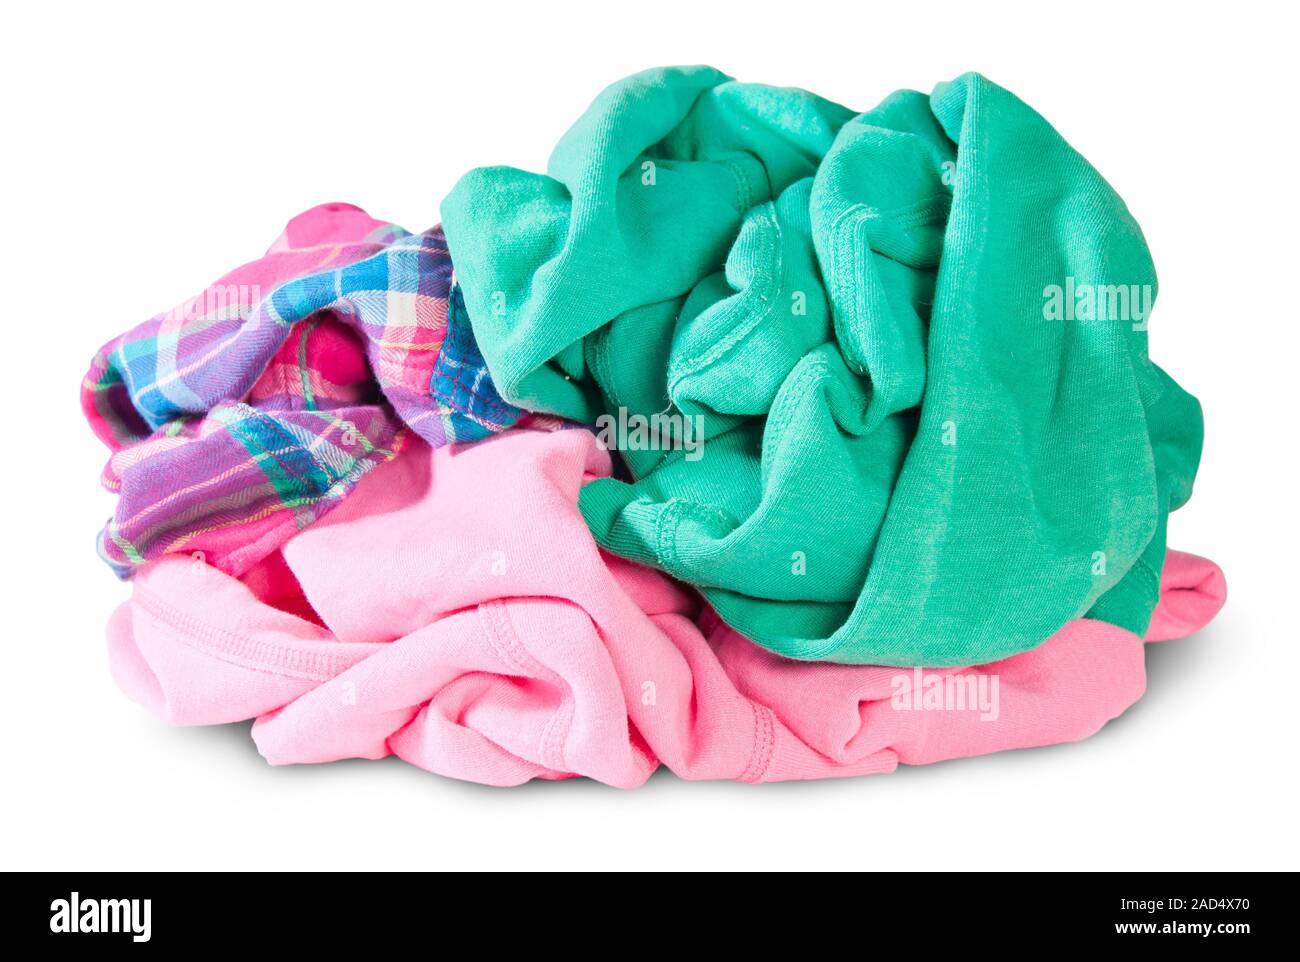 Pile clothes messy immagini e fotografie stock ad alta risoluzione - Alamy